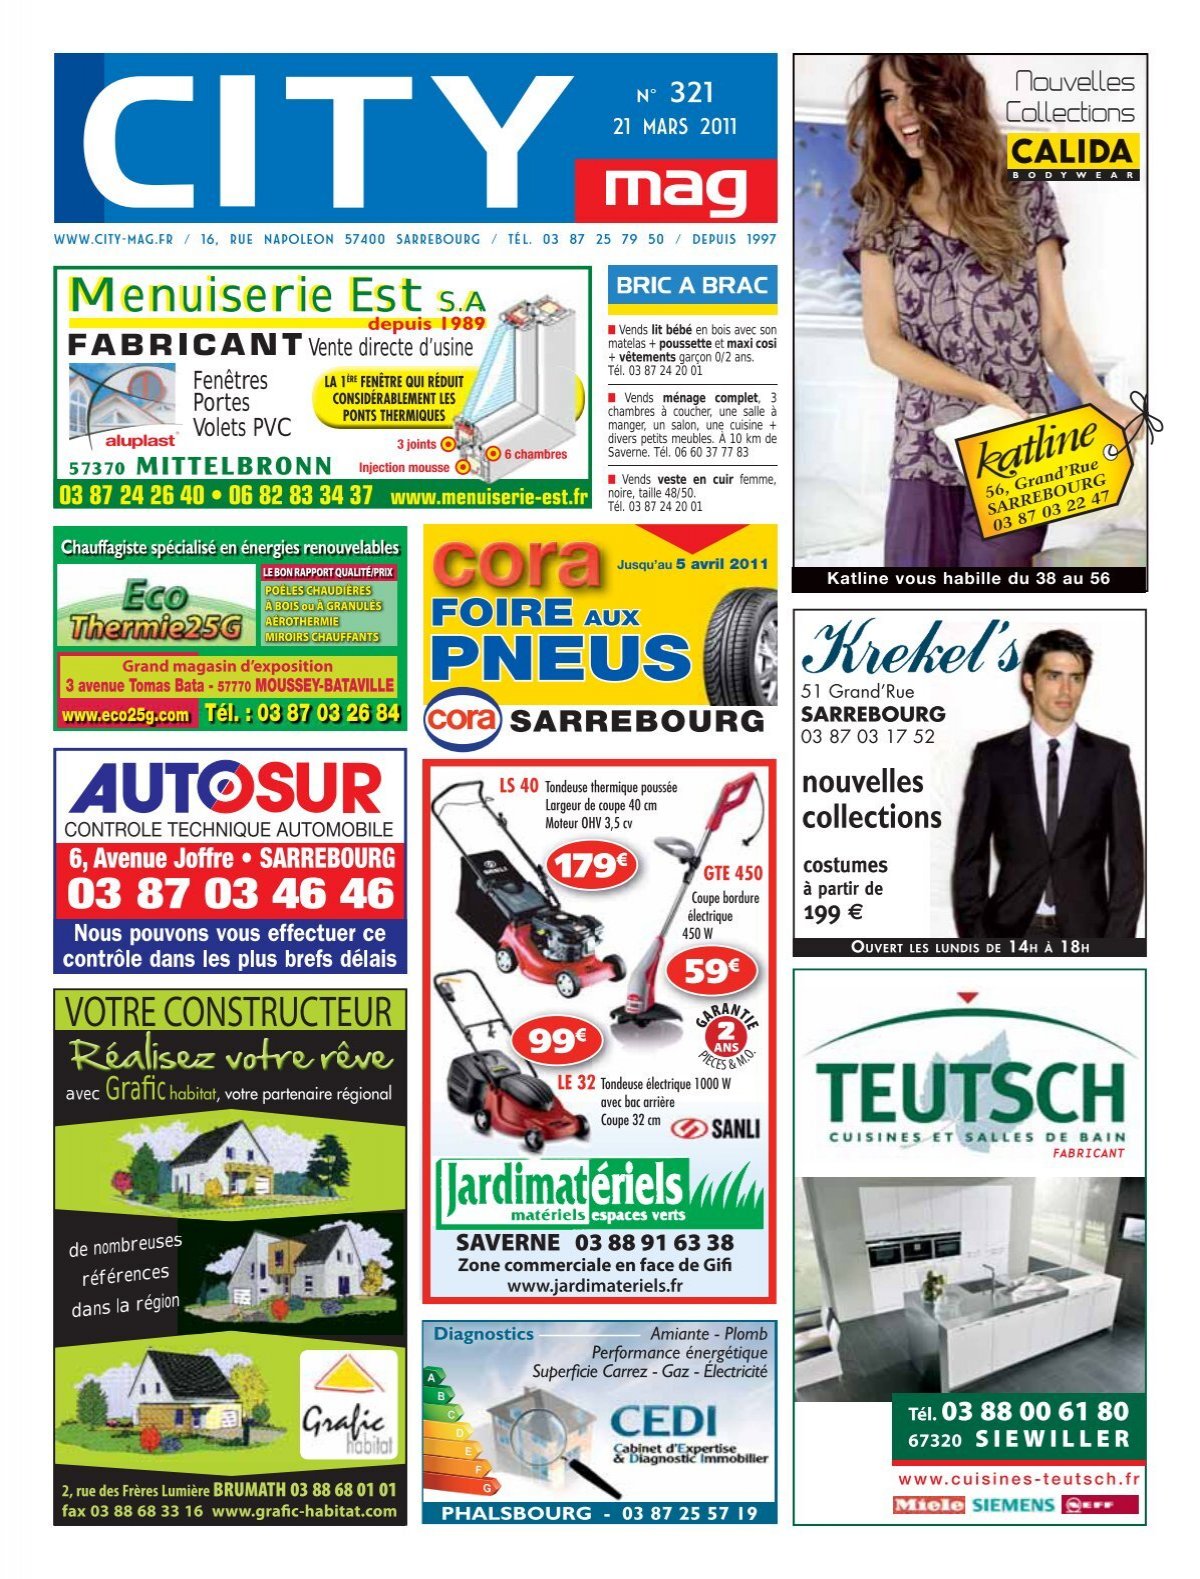 RTA (revue Technique Automobile) Peugeot - TELECHARGEMENT -  -  Valise Diagnostique Pour Voiture/moto/camion